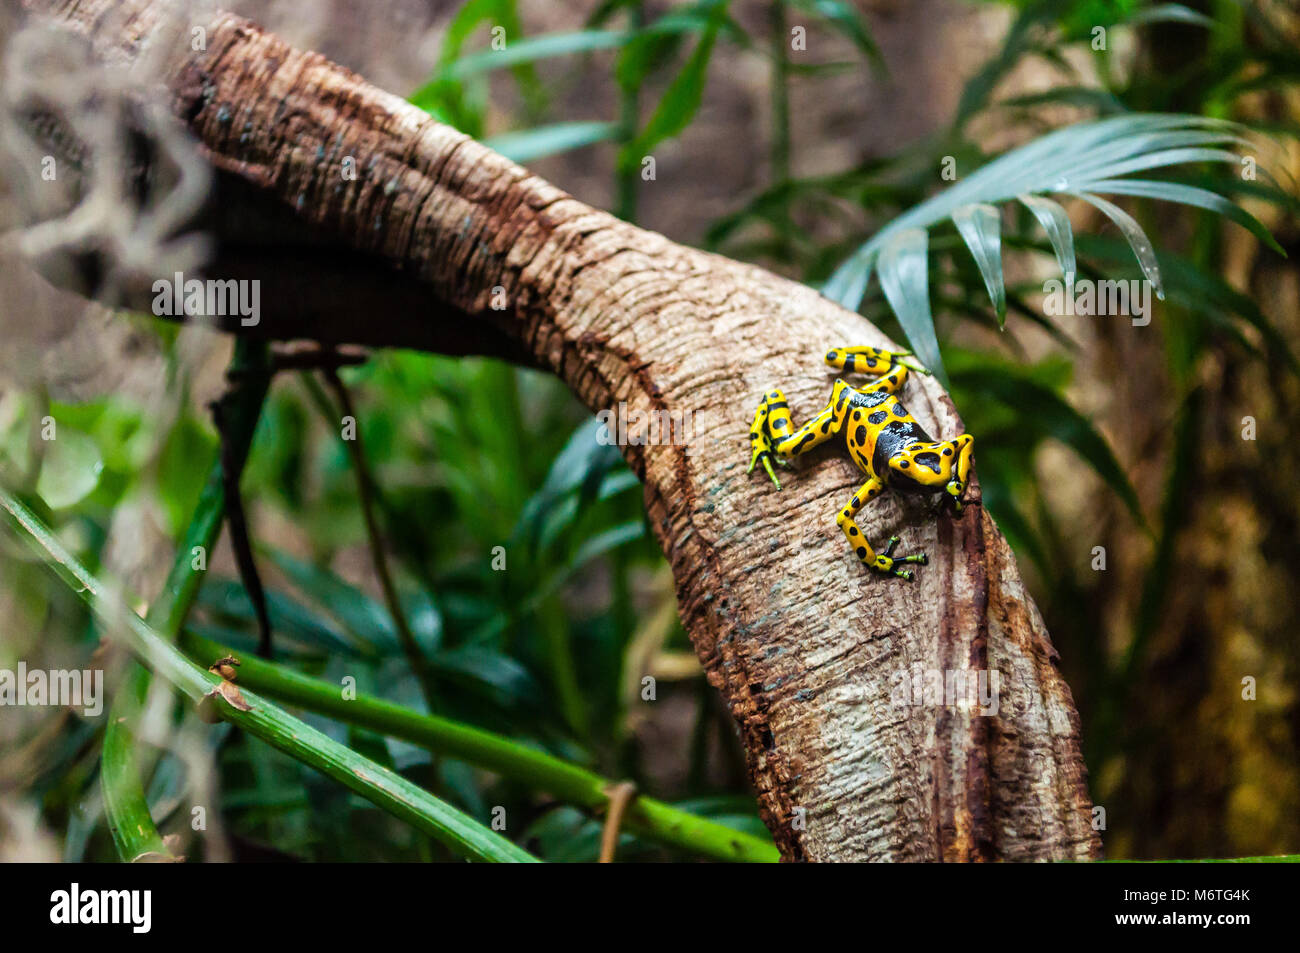 Dendrobates leucomelas (Yellow-headed Poison Frog) Stock Photo